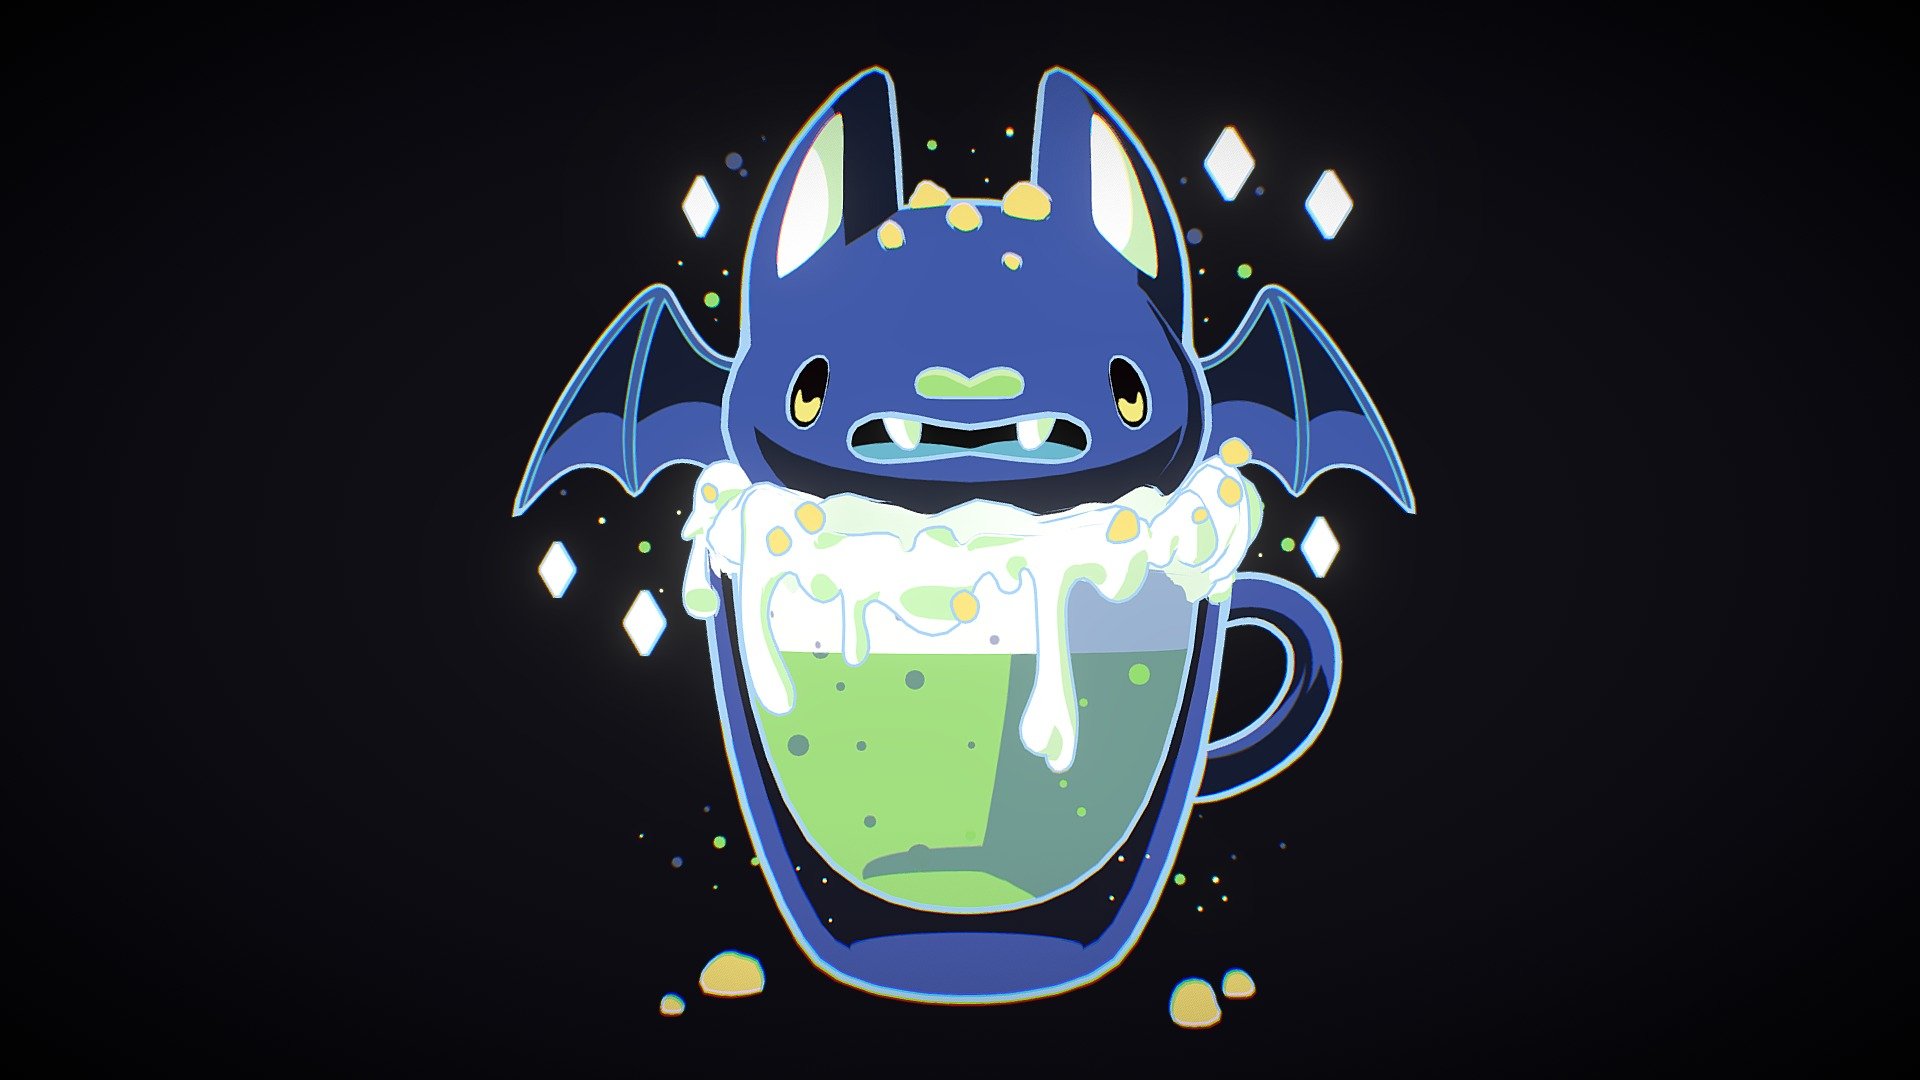 Original Art: https://www.pinterest.es/pin/35606653297338595/ - Halloween Bat green drink 🦇🦇 - 3D model by carlin.chu 3d model